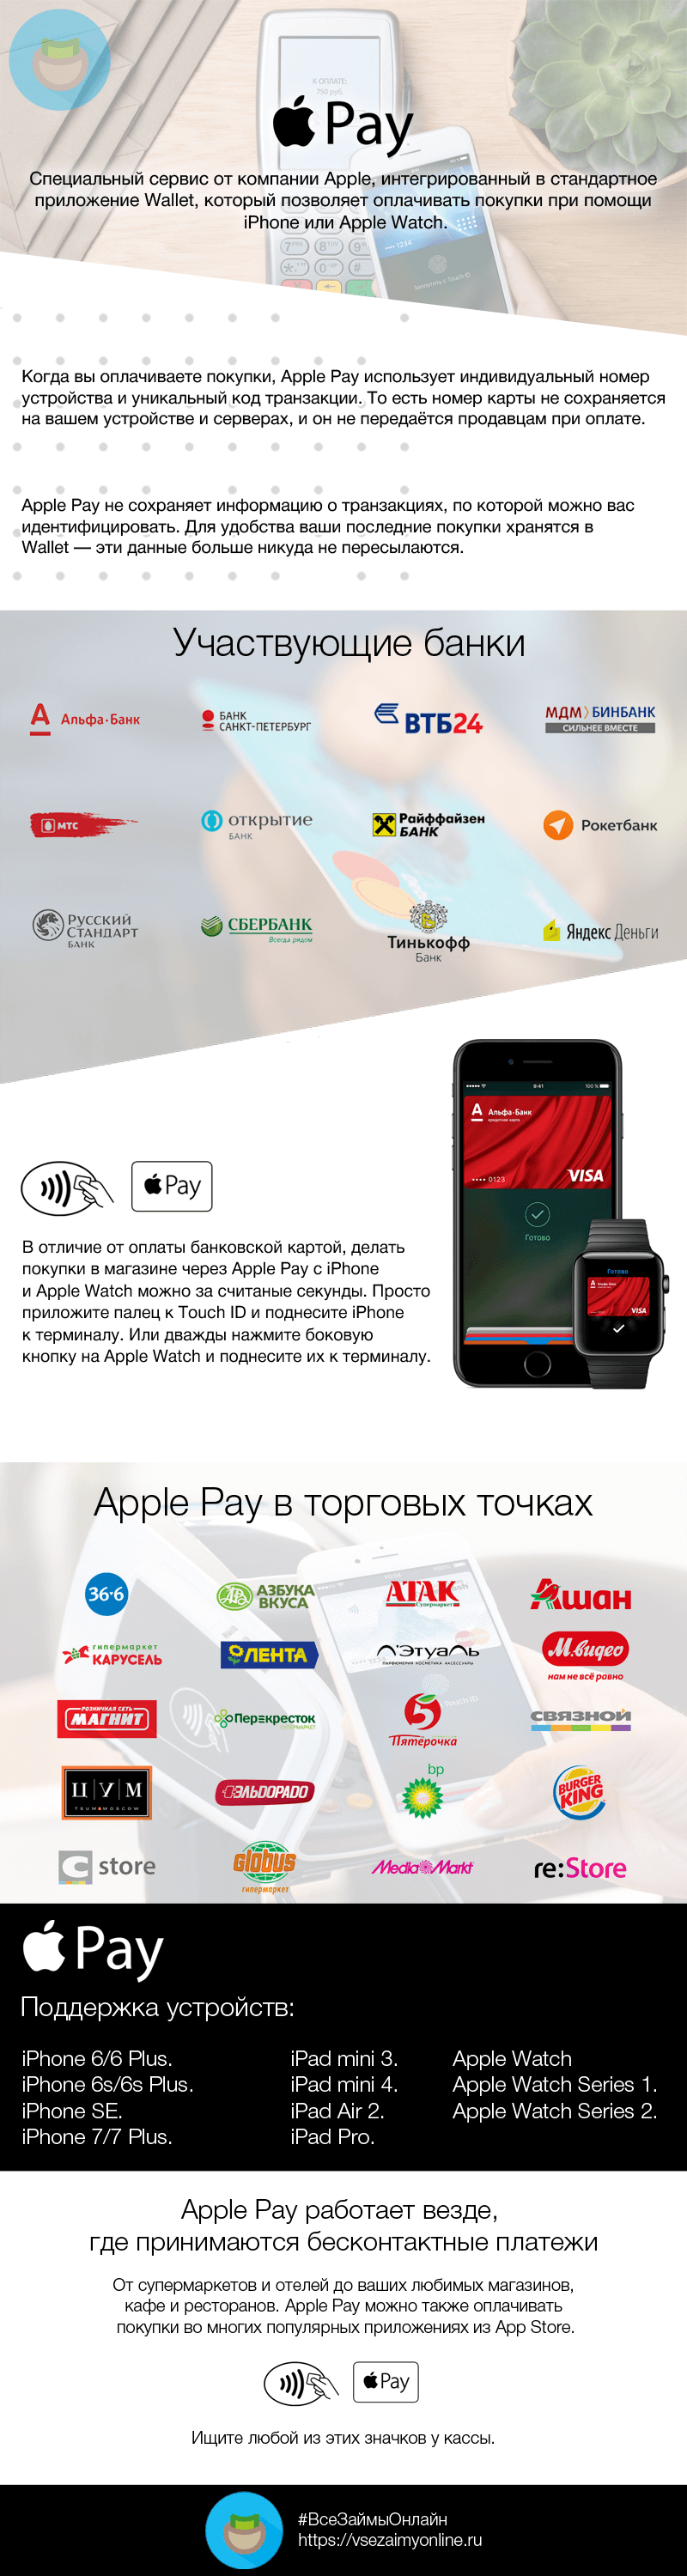 ApplePay в России